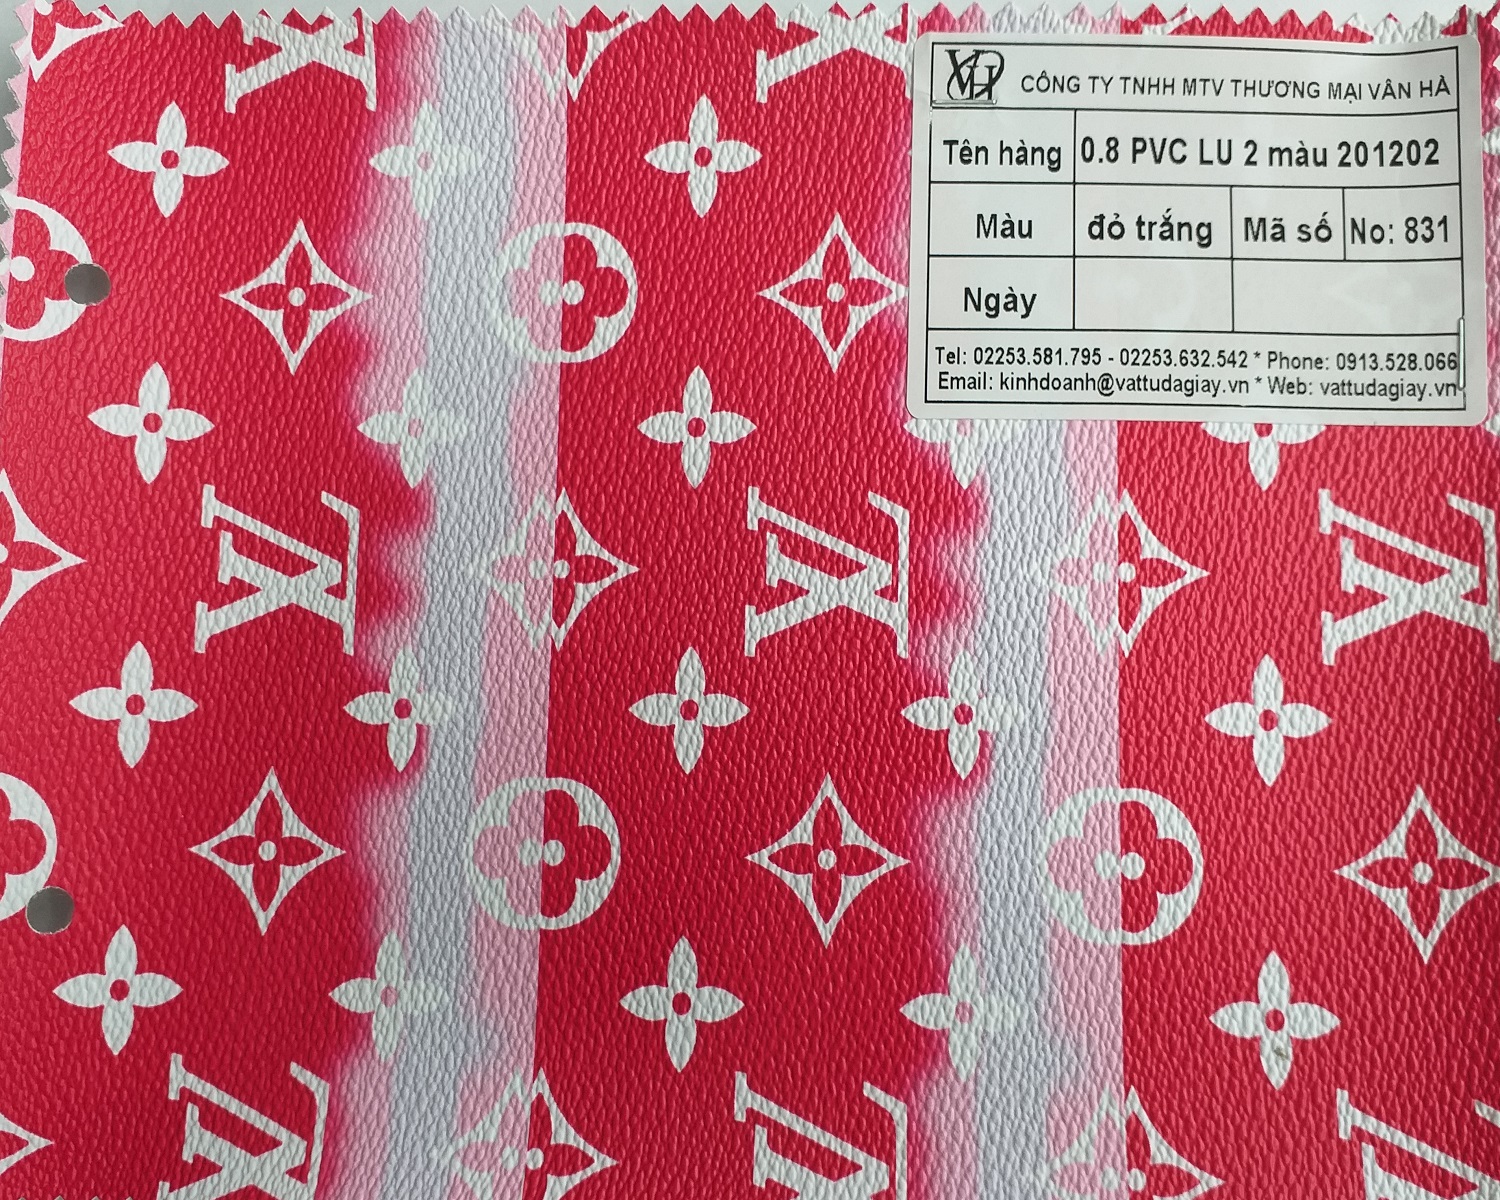 08 pvc lu 2 màu 201202 đỏ trắng mã 831 - 0.8 PVC LU 2 màu 201202 đỏ trắng mã 831